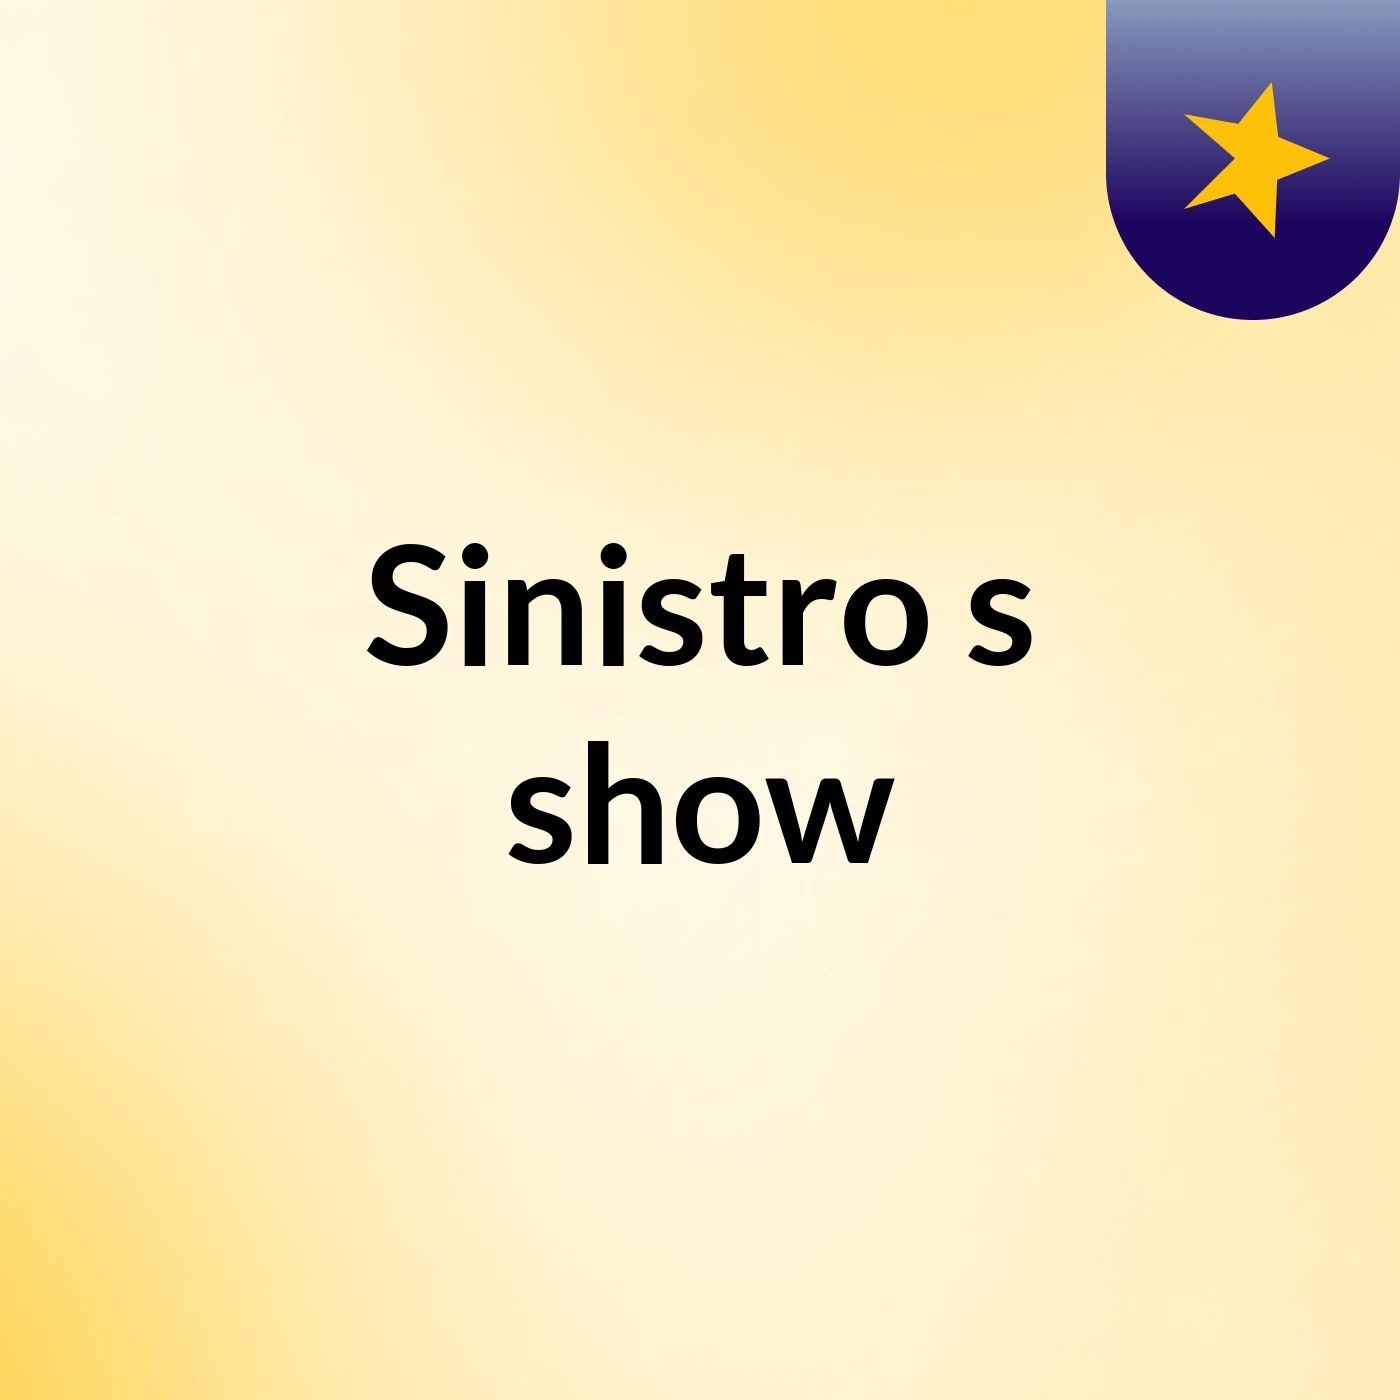 Sinistro's show